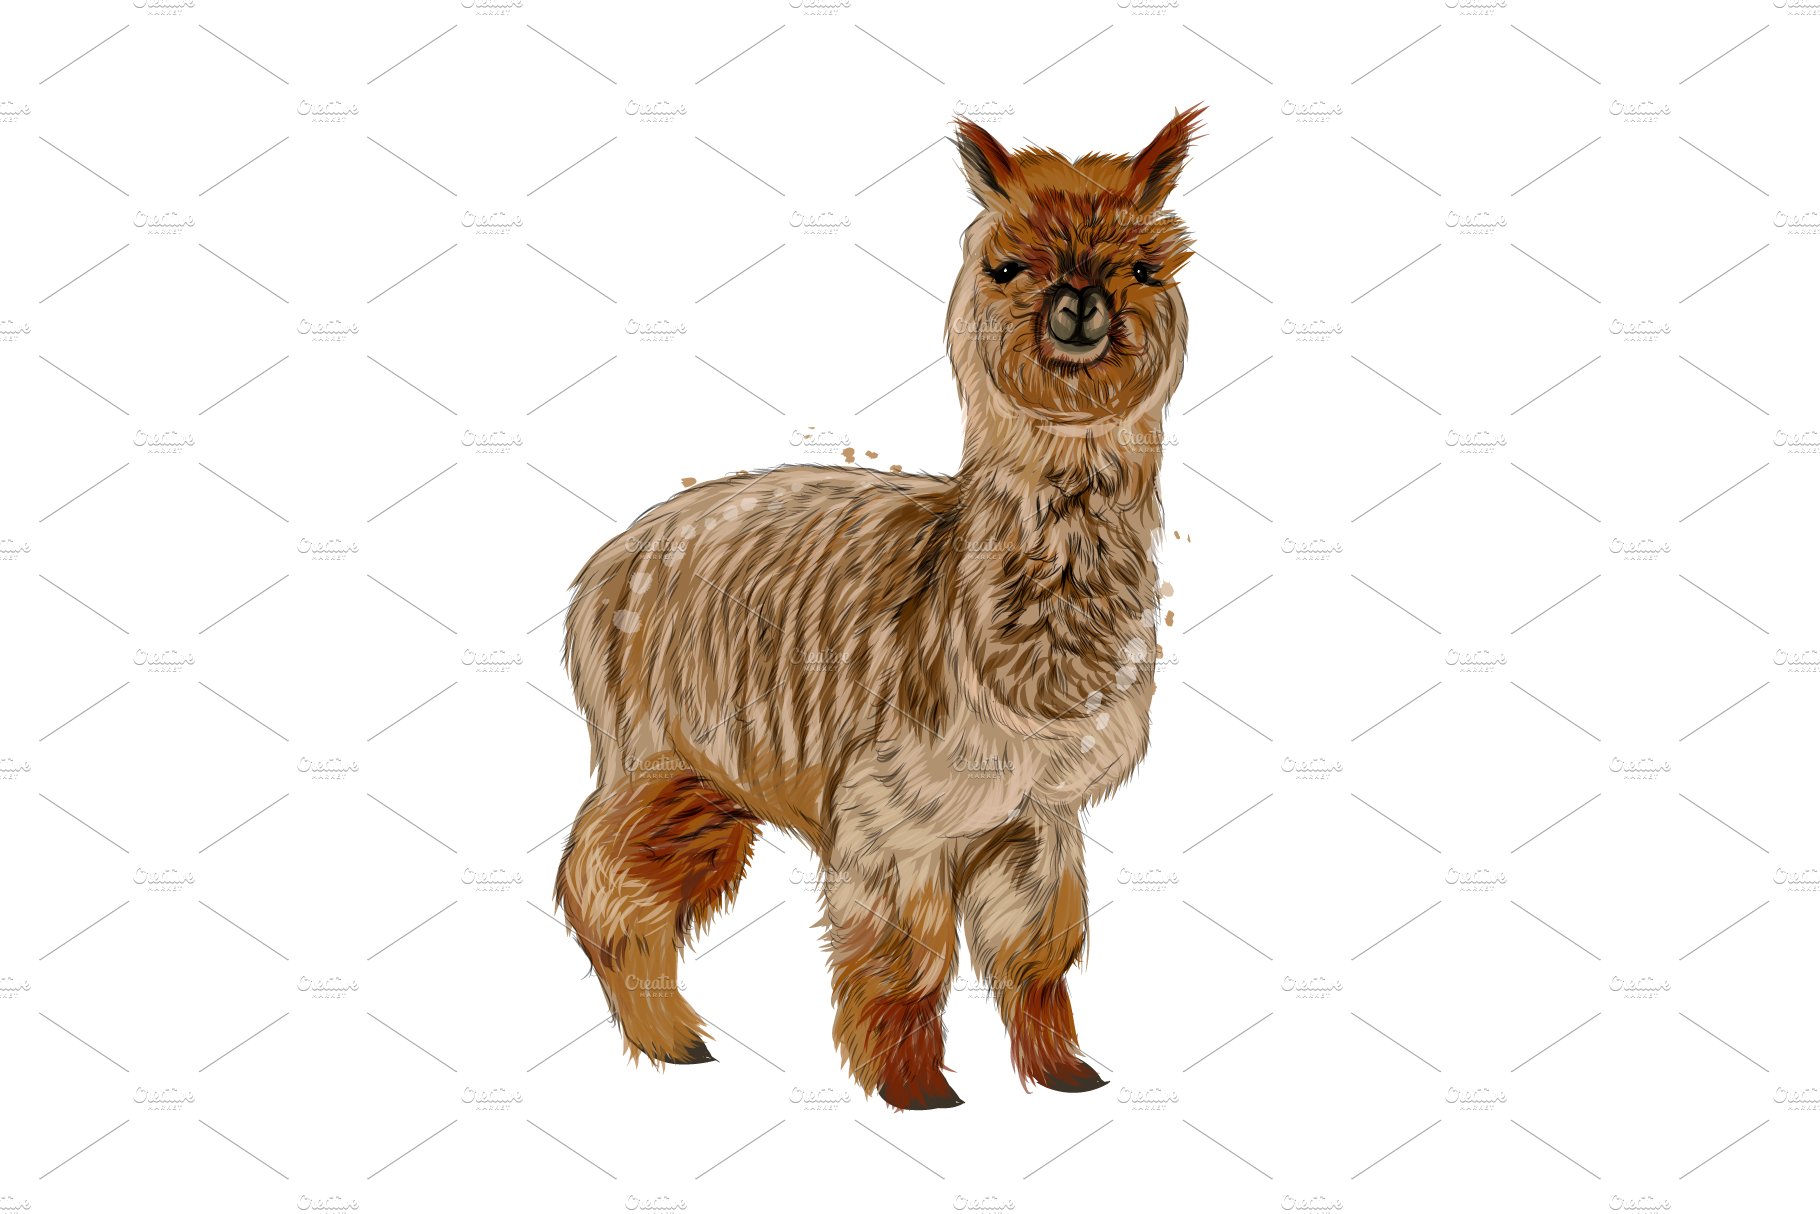 Mountain alpaca, lama cover image.